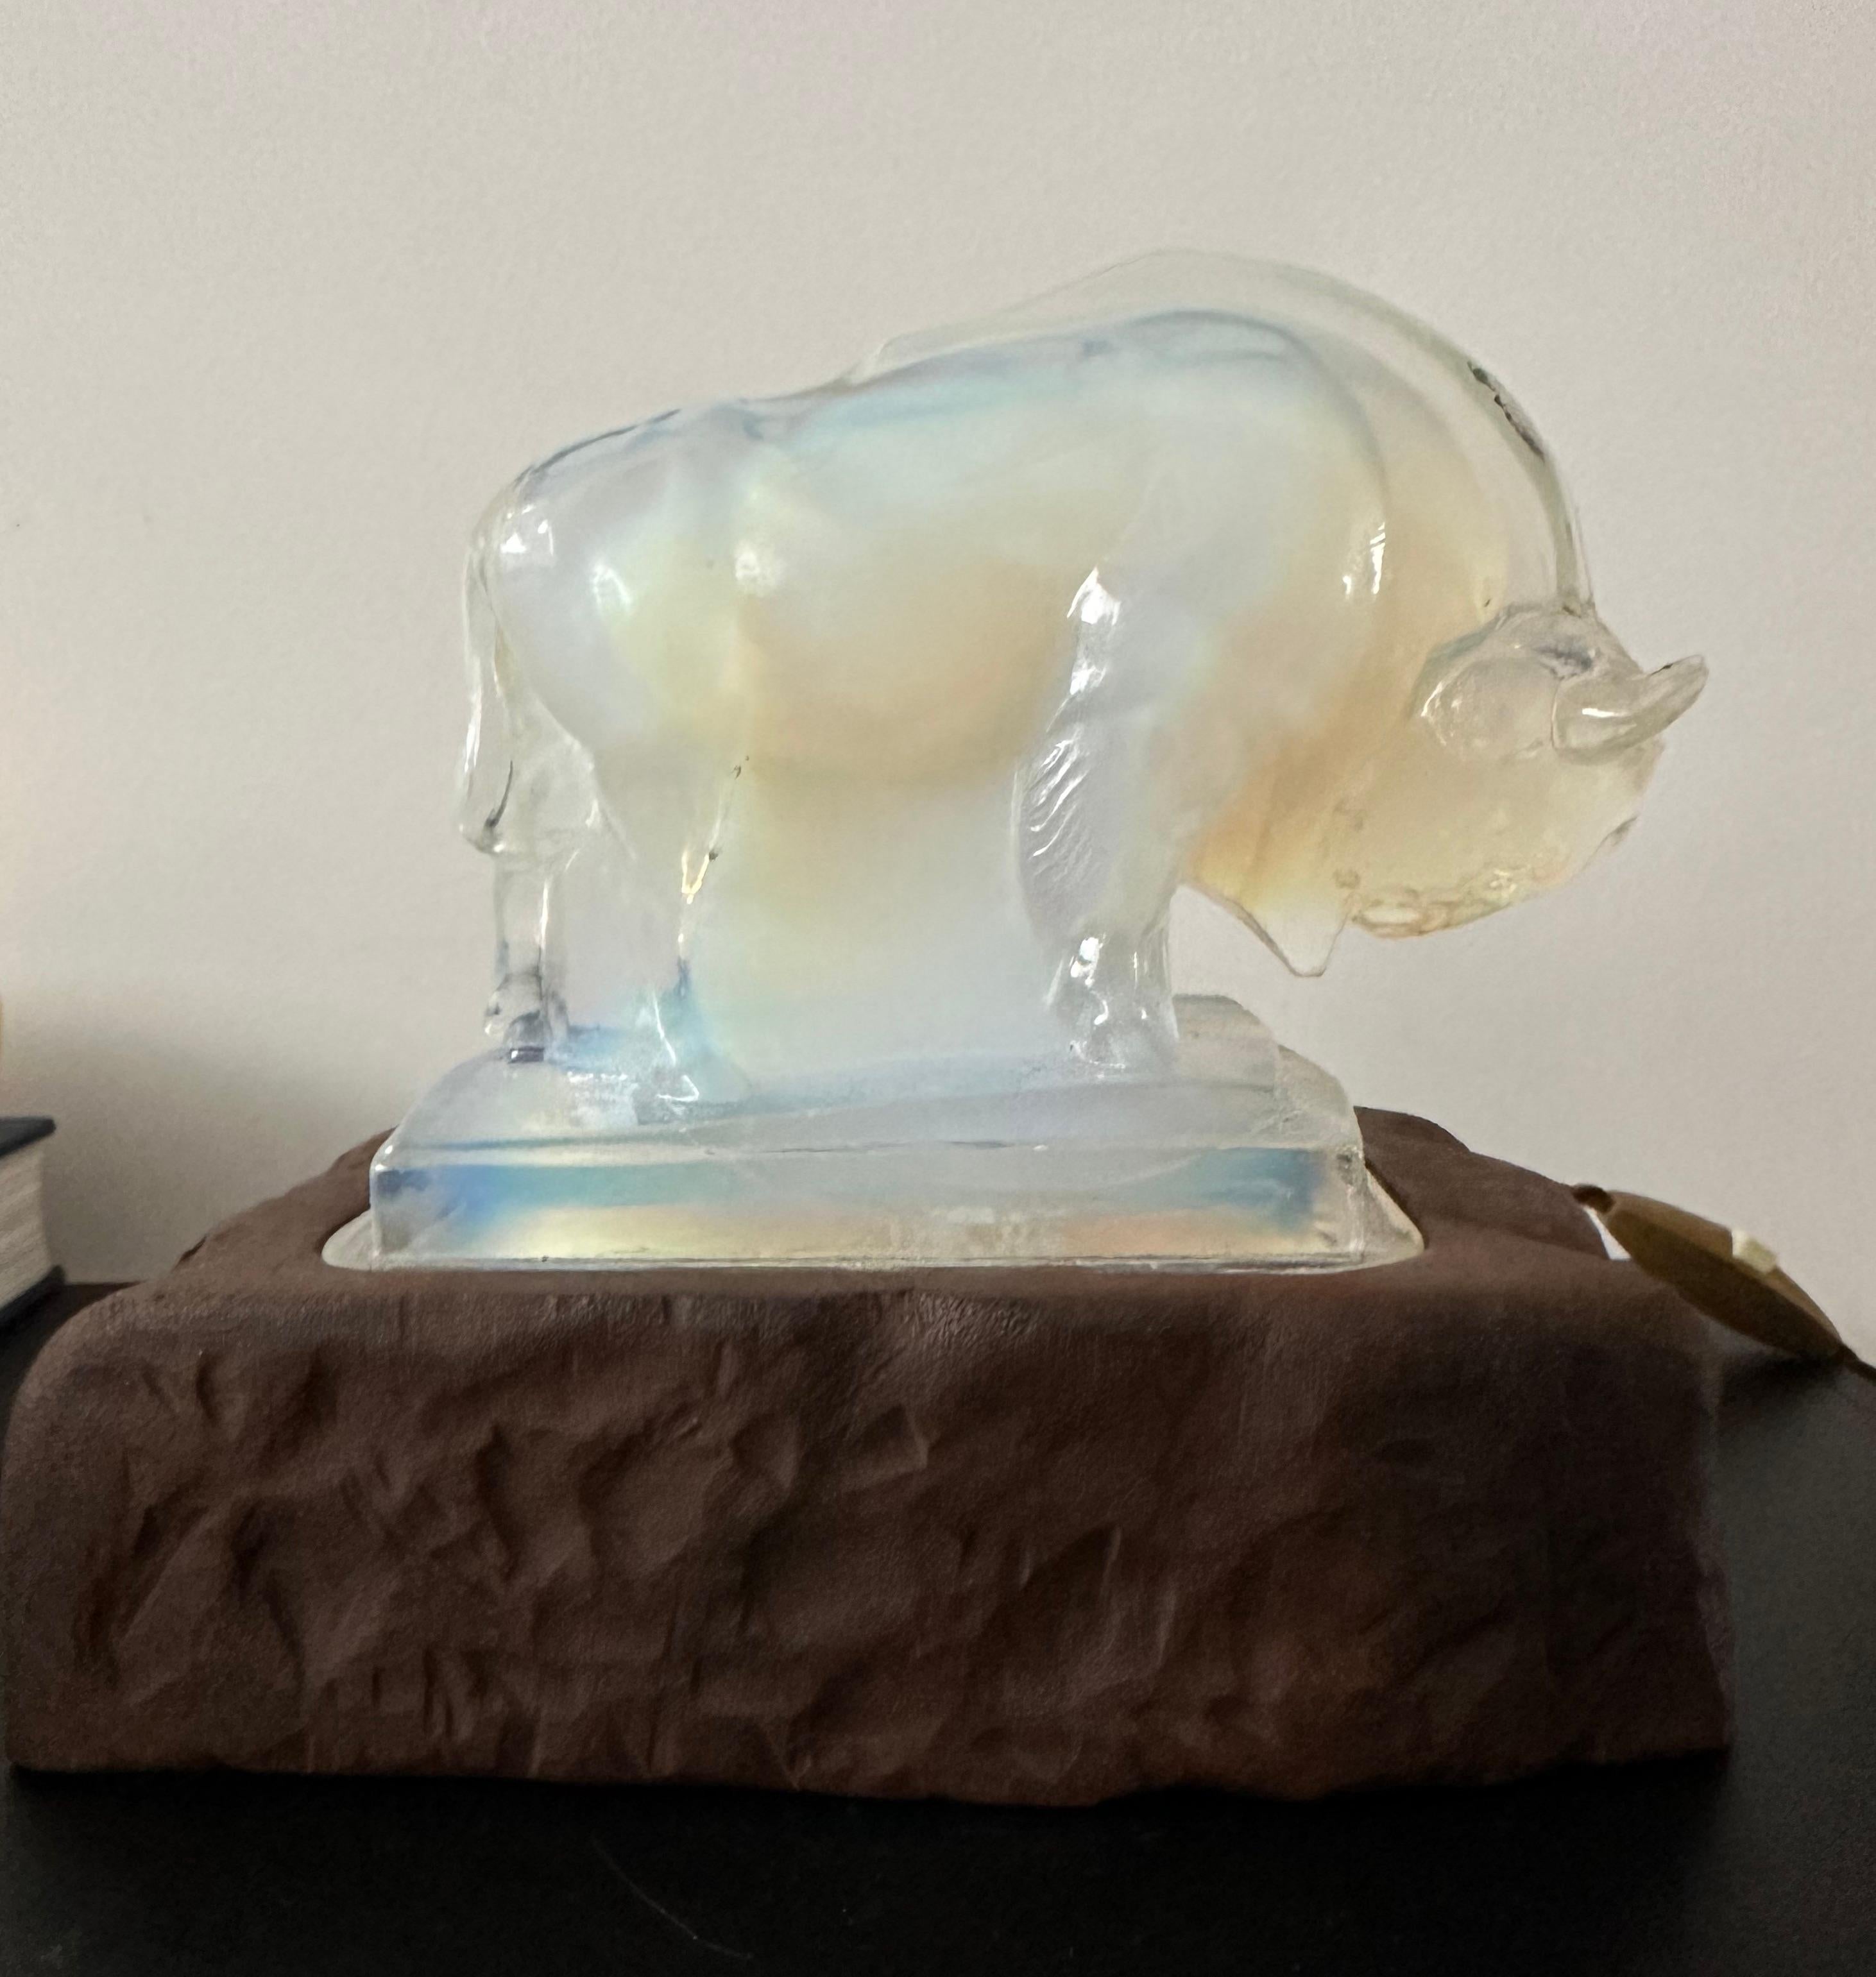 Seltene und stilvolle Bison-Skulptur-Lampe von EDMOND ETLING.

Diese schöne und wahrhaft künstlerische Art Deco Tischlampe ist mit der Signatur 